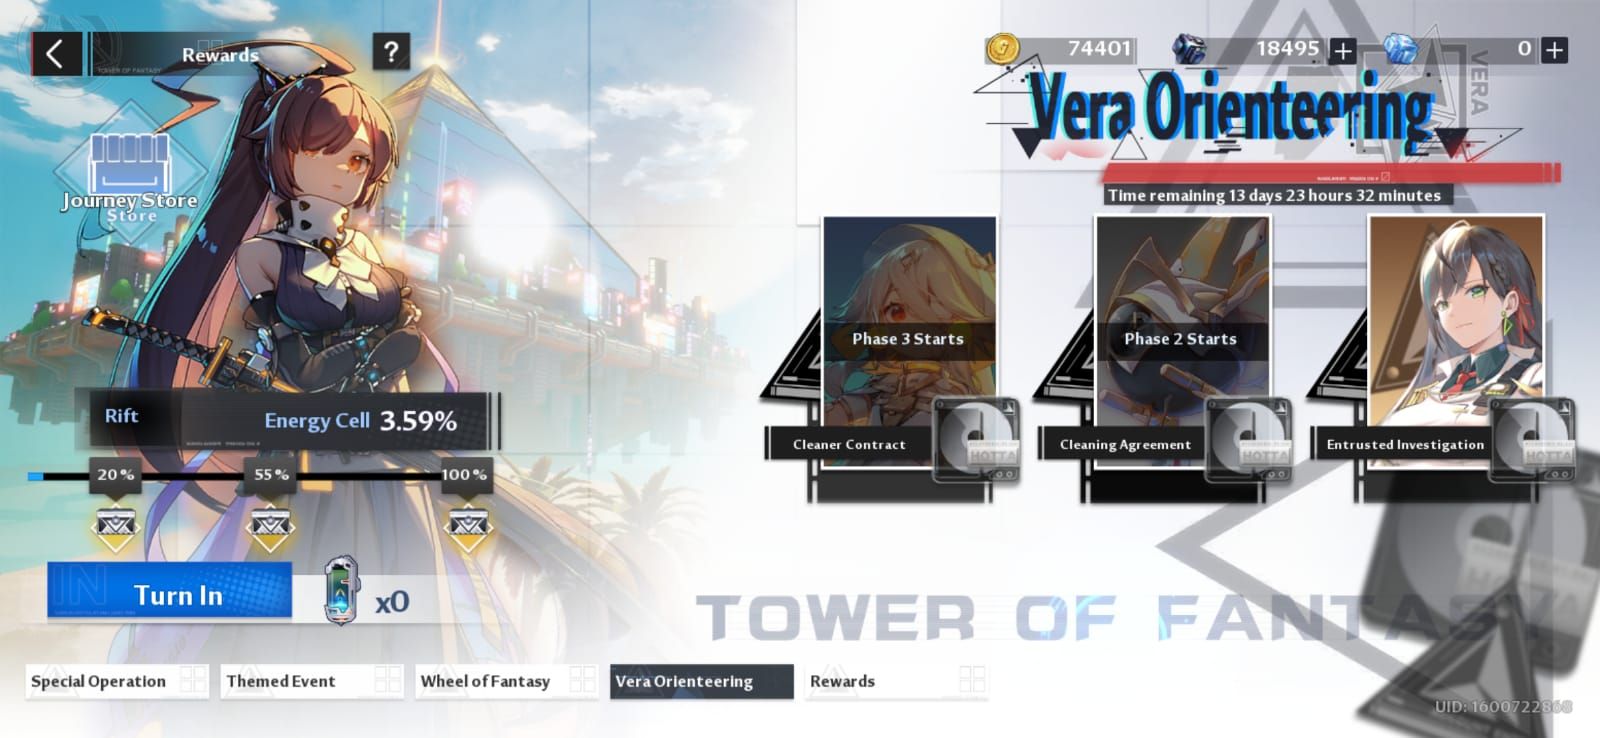 Vera Orienteering Tower of Fantasy